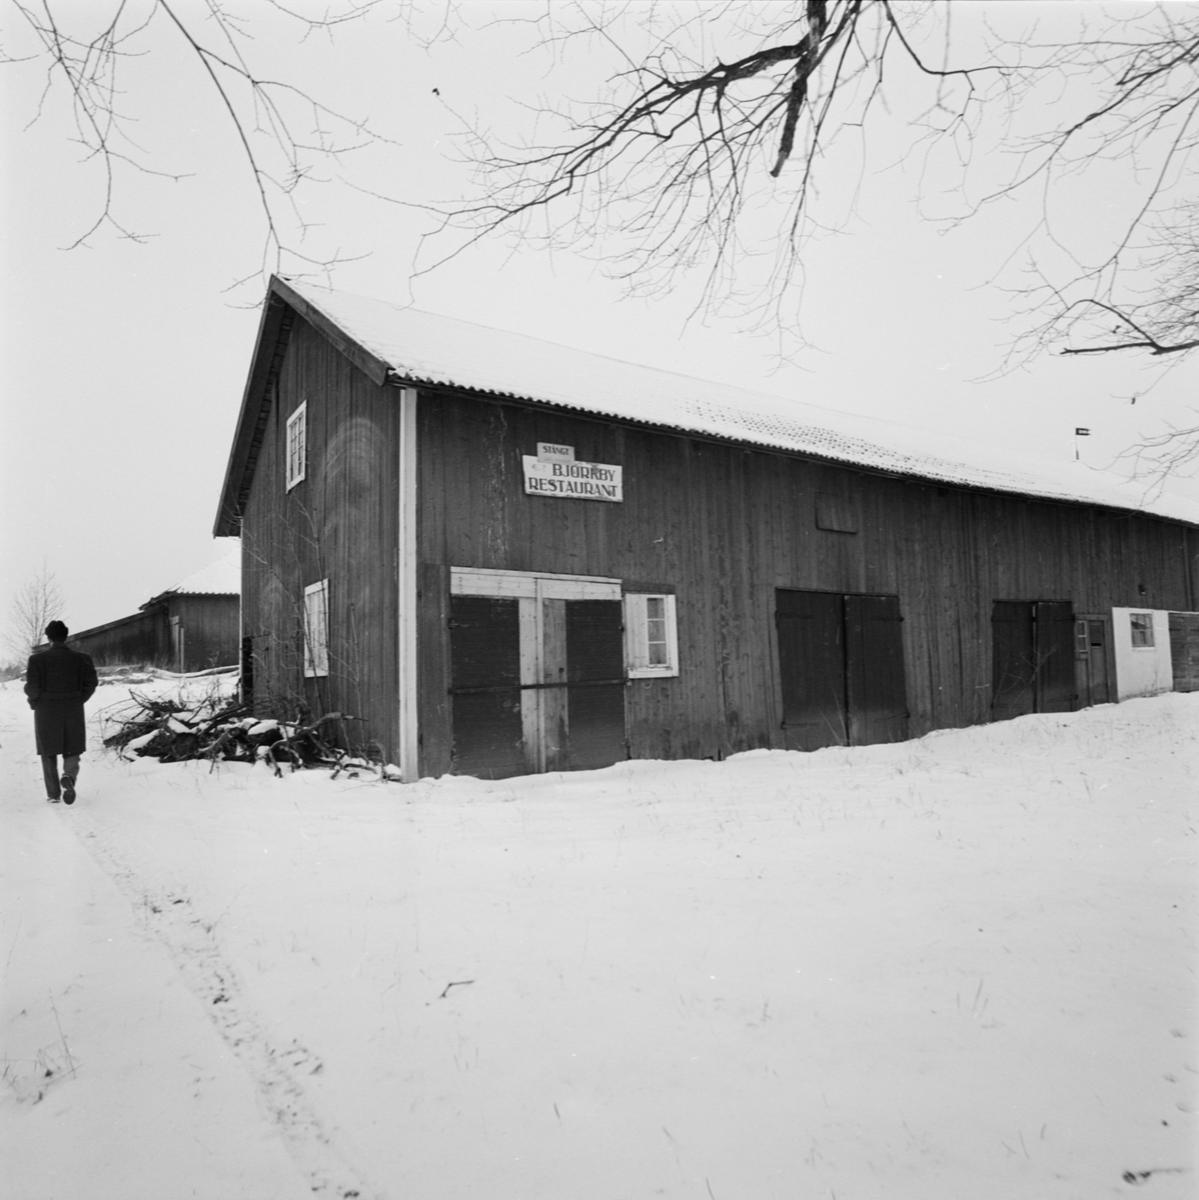 Ulva gård och kvarn, Uppsala januari 1958